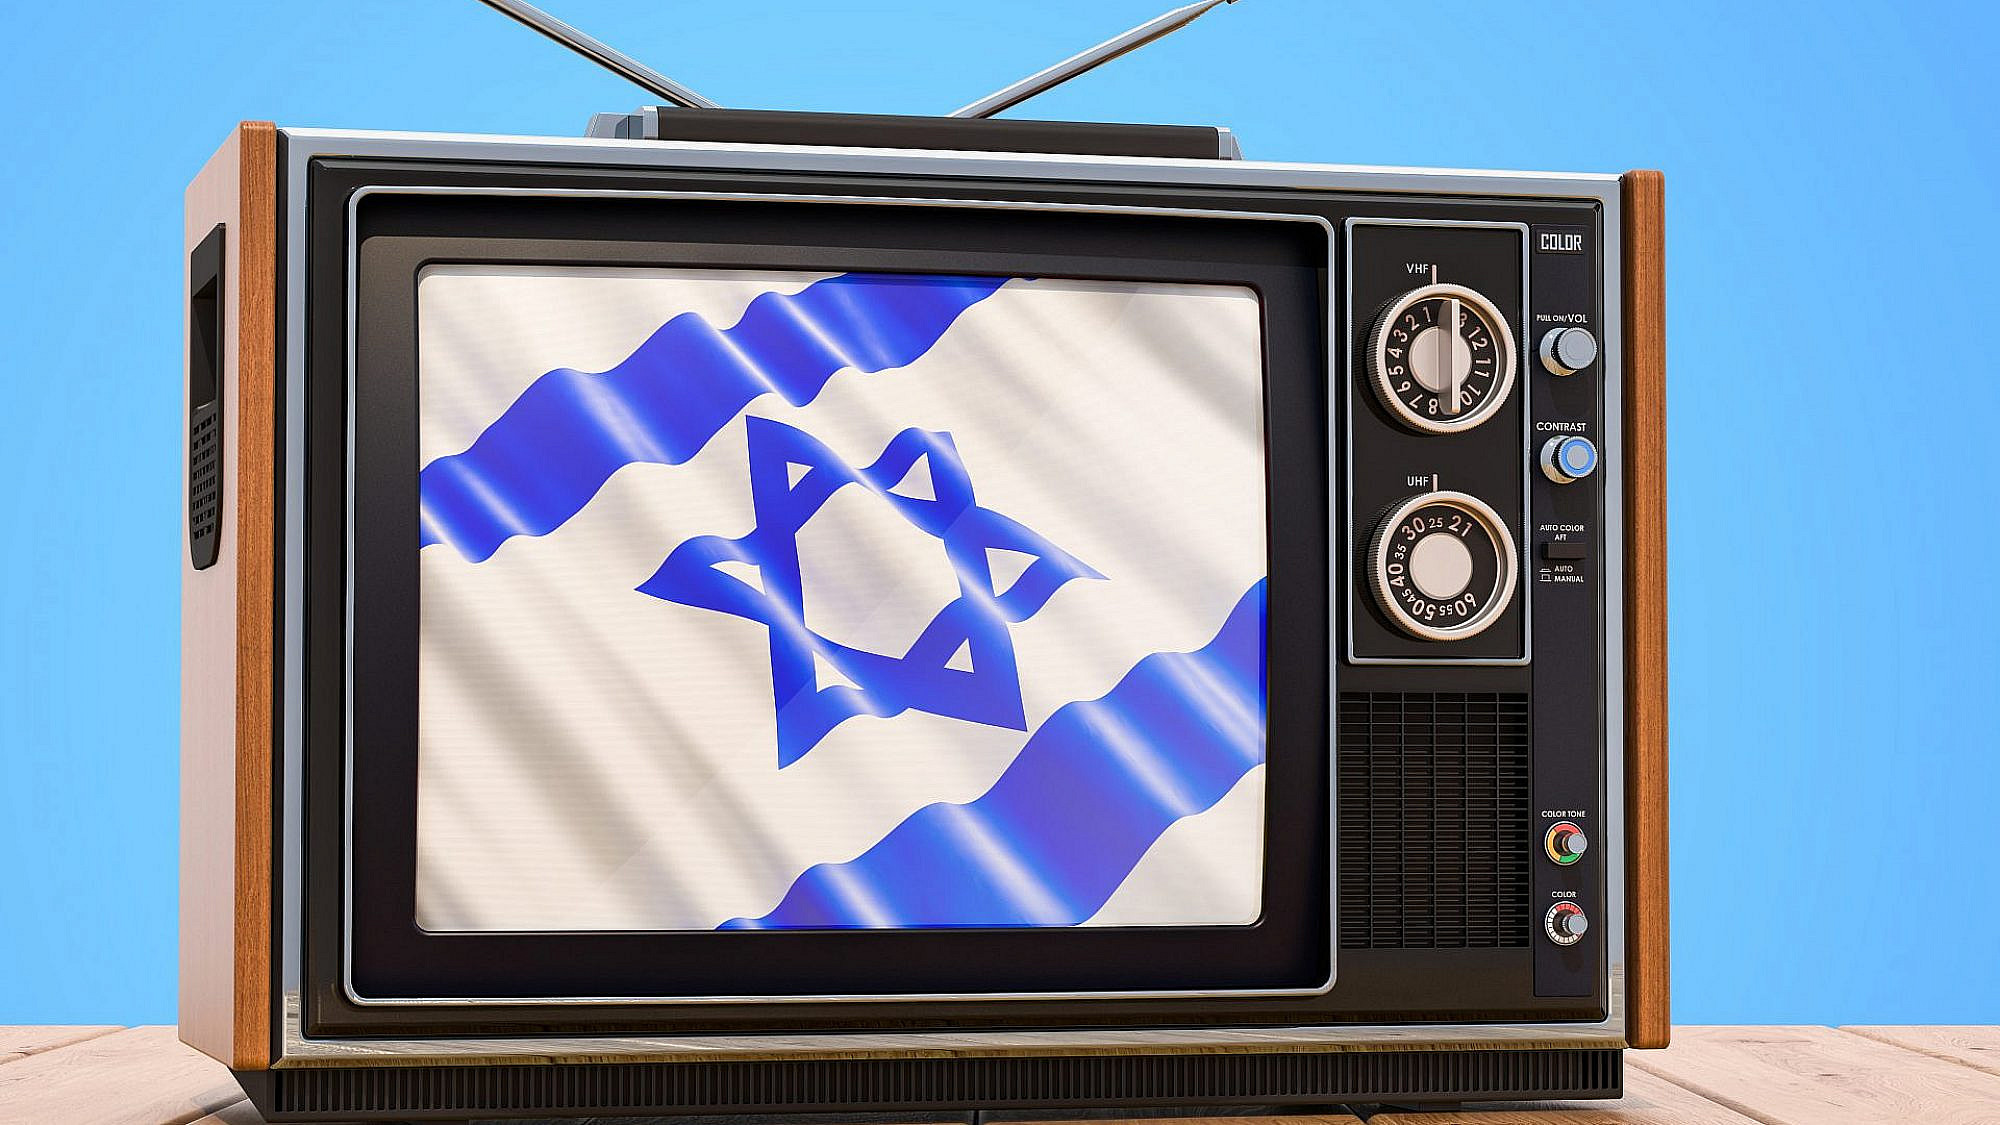 טלוויזיה ישראלית? במקום שאליו אנחנו הולכים לא צריך טלוויזיה ישראלית (צילום: שאטרסטוק)